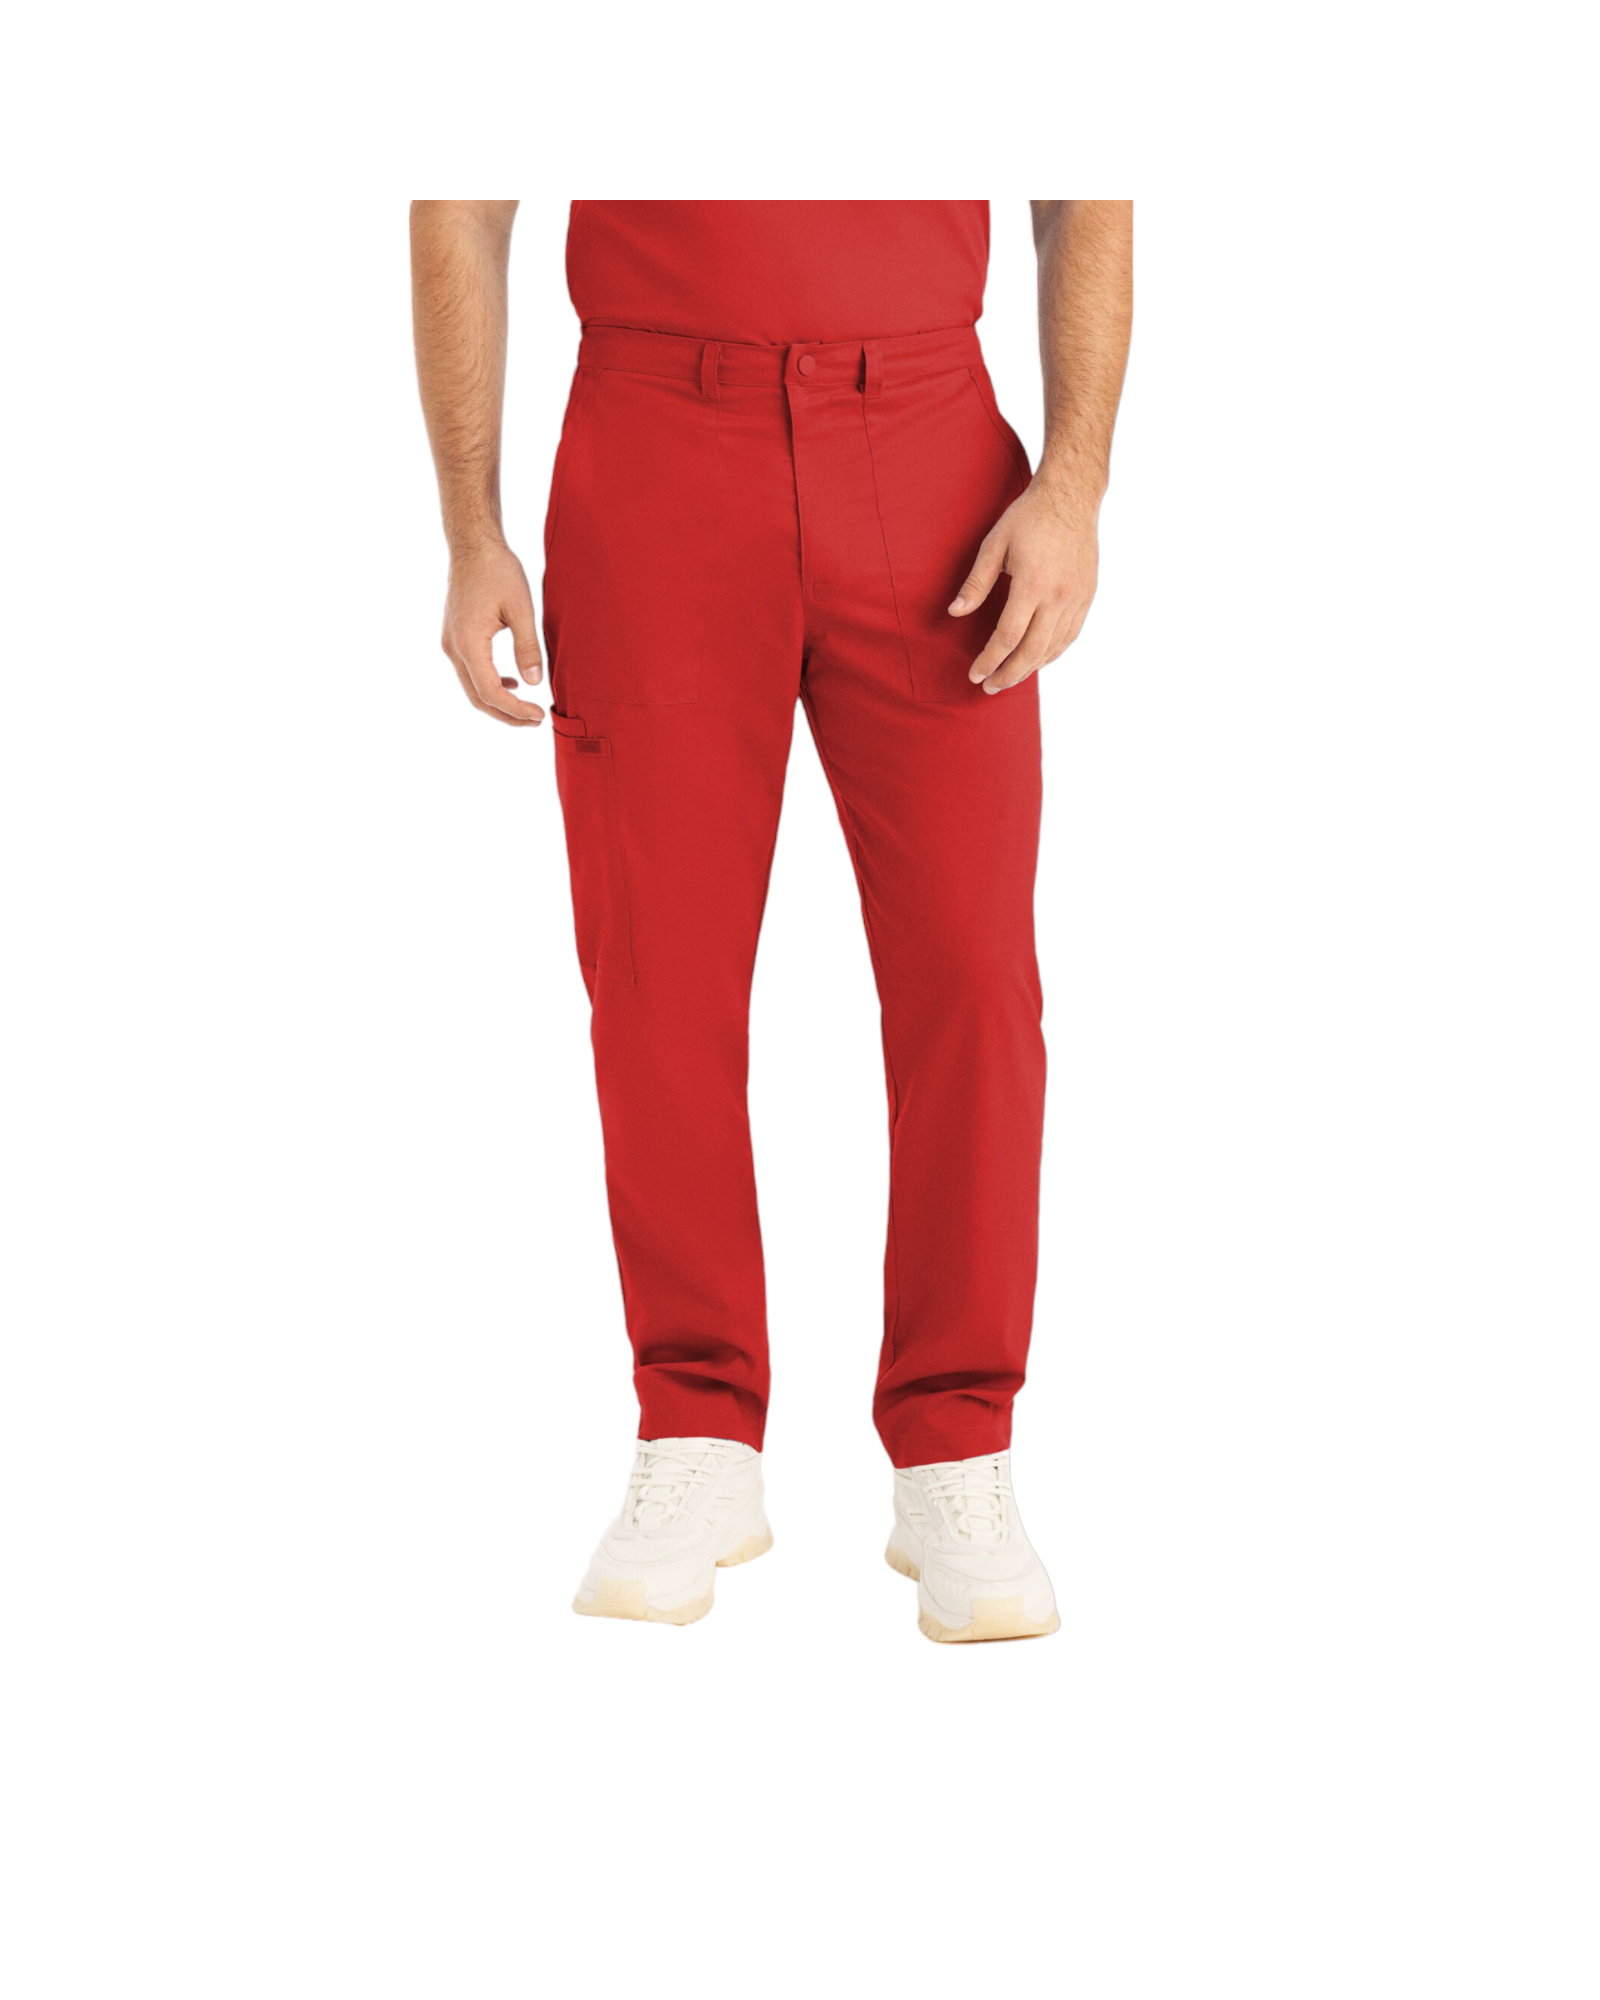 Pantalon jogger pour hommes Landau Proflex #LB408 avec braguette zippée avec élastique dissimulé, cordon de serrage, 2 poches cargo plaqué dont une avec cordon élastique, 2 poches avant et 2 poches arrière., couleur Rouge.